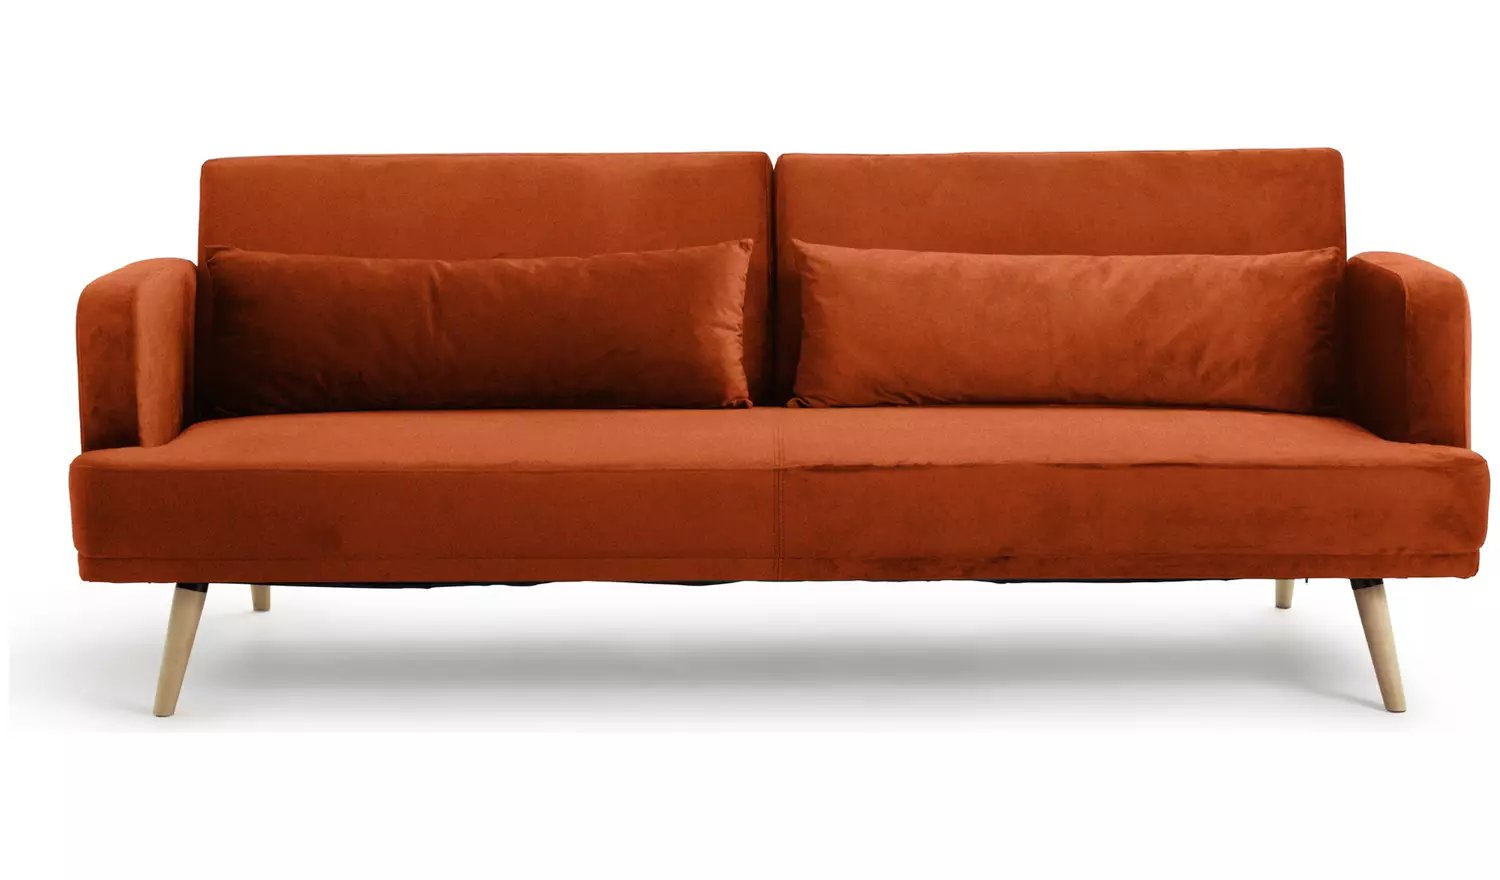 Un canapé-lit utile est disponible à moitié prix chez Argos